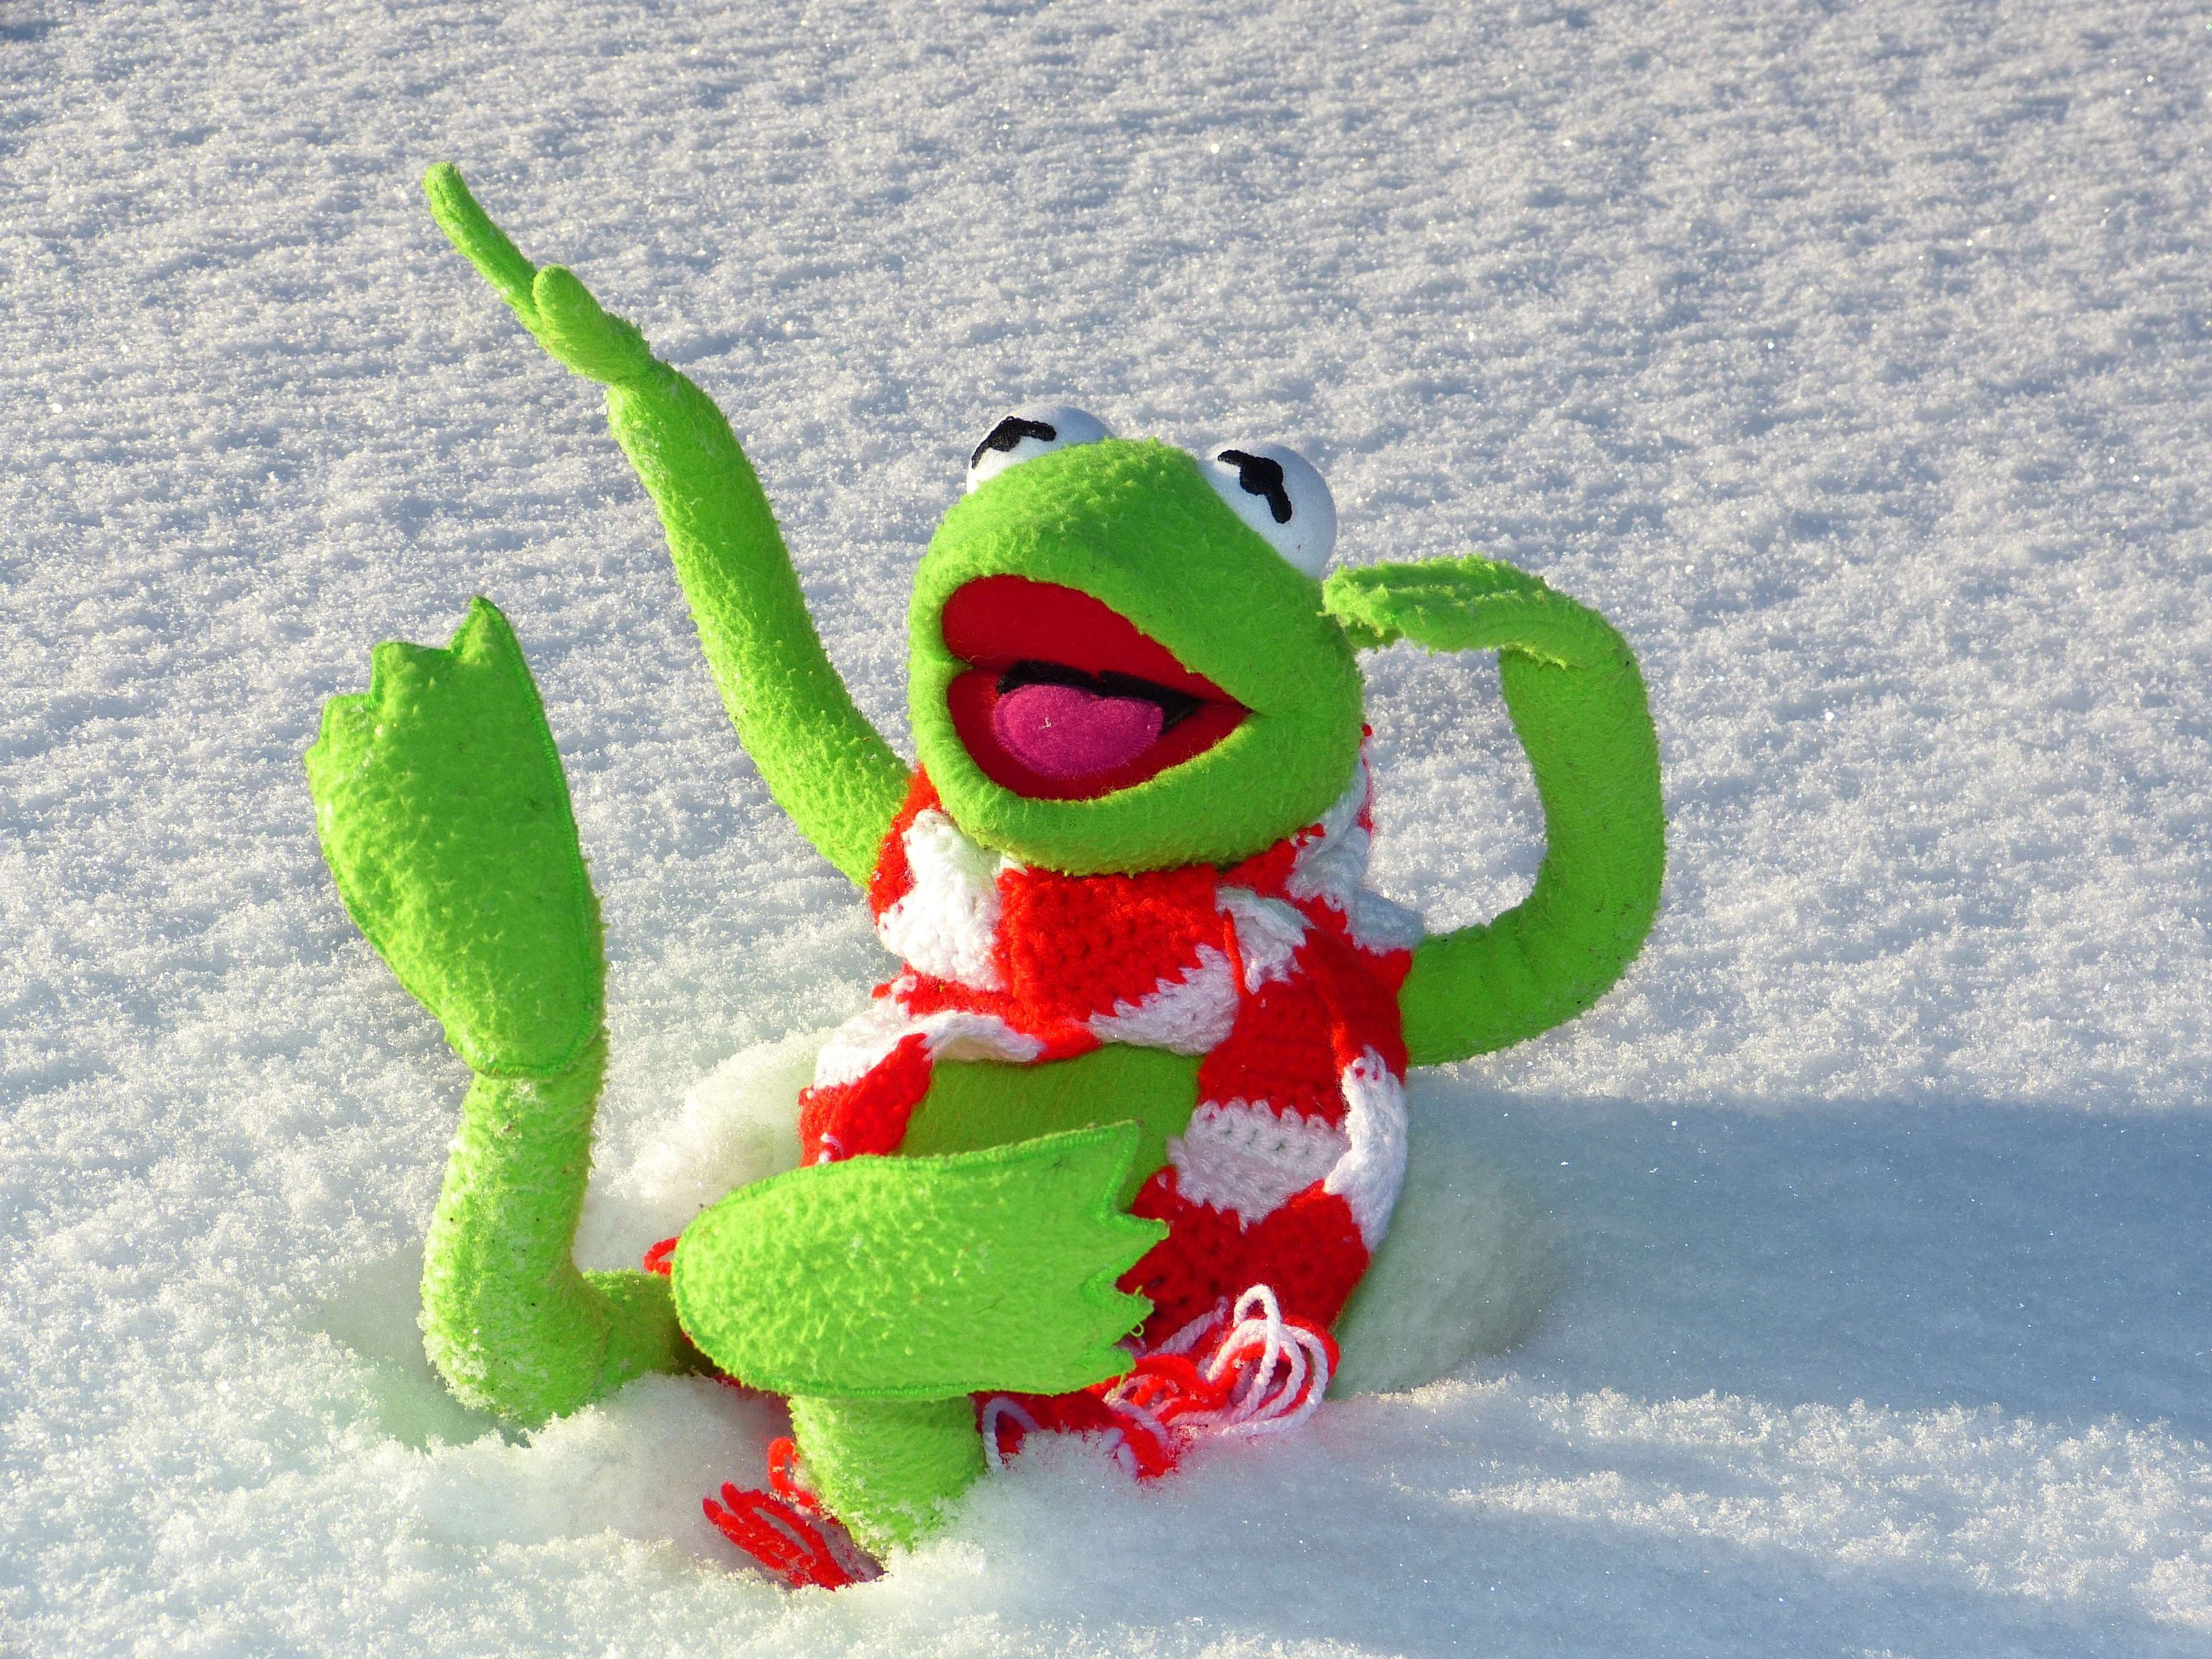 Kermit In The Snow - HD Wallpaper 